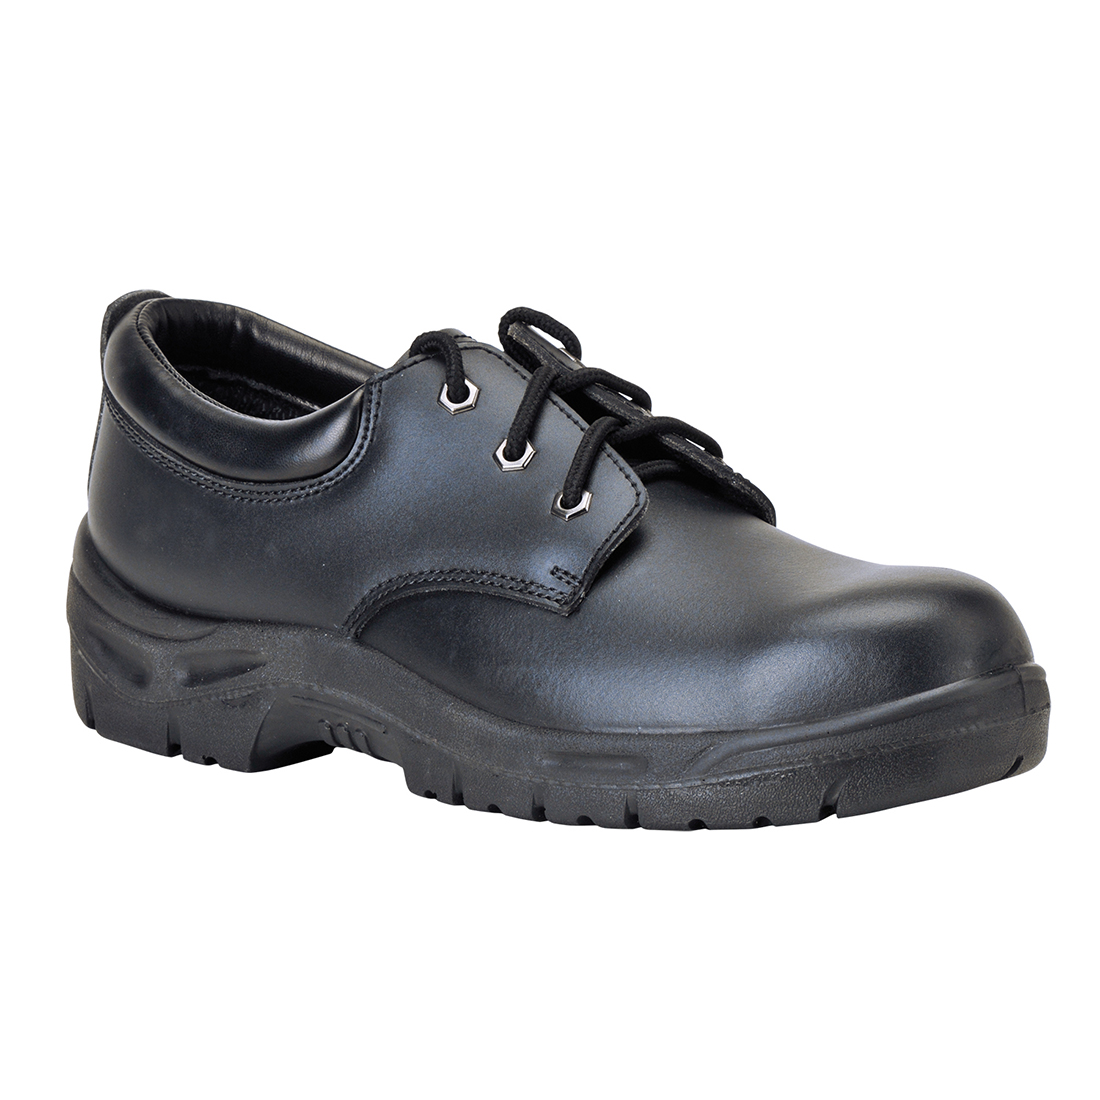 Steelite Shoe S3 - Black